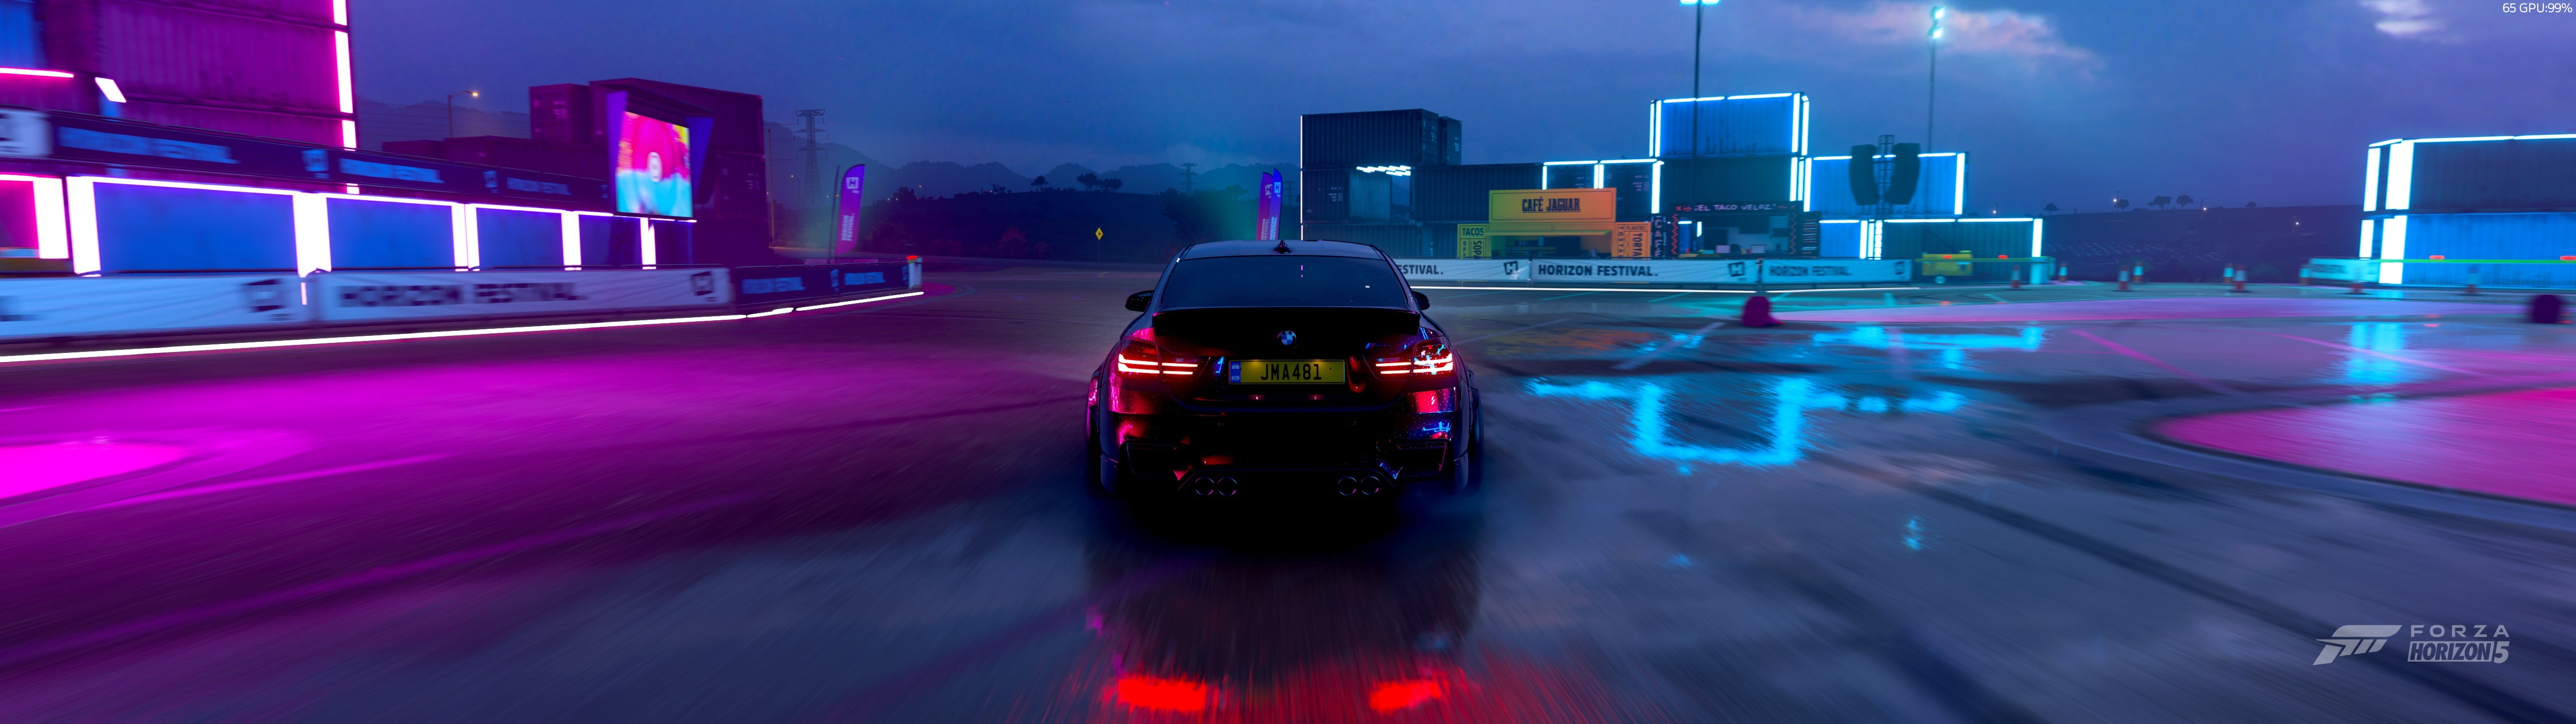 BMW M, Forza Horizon 5, photo realistic, neon